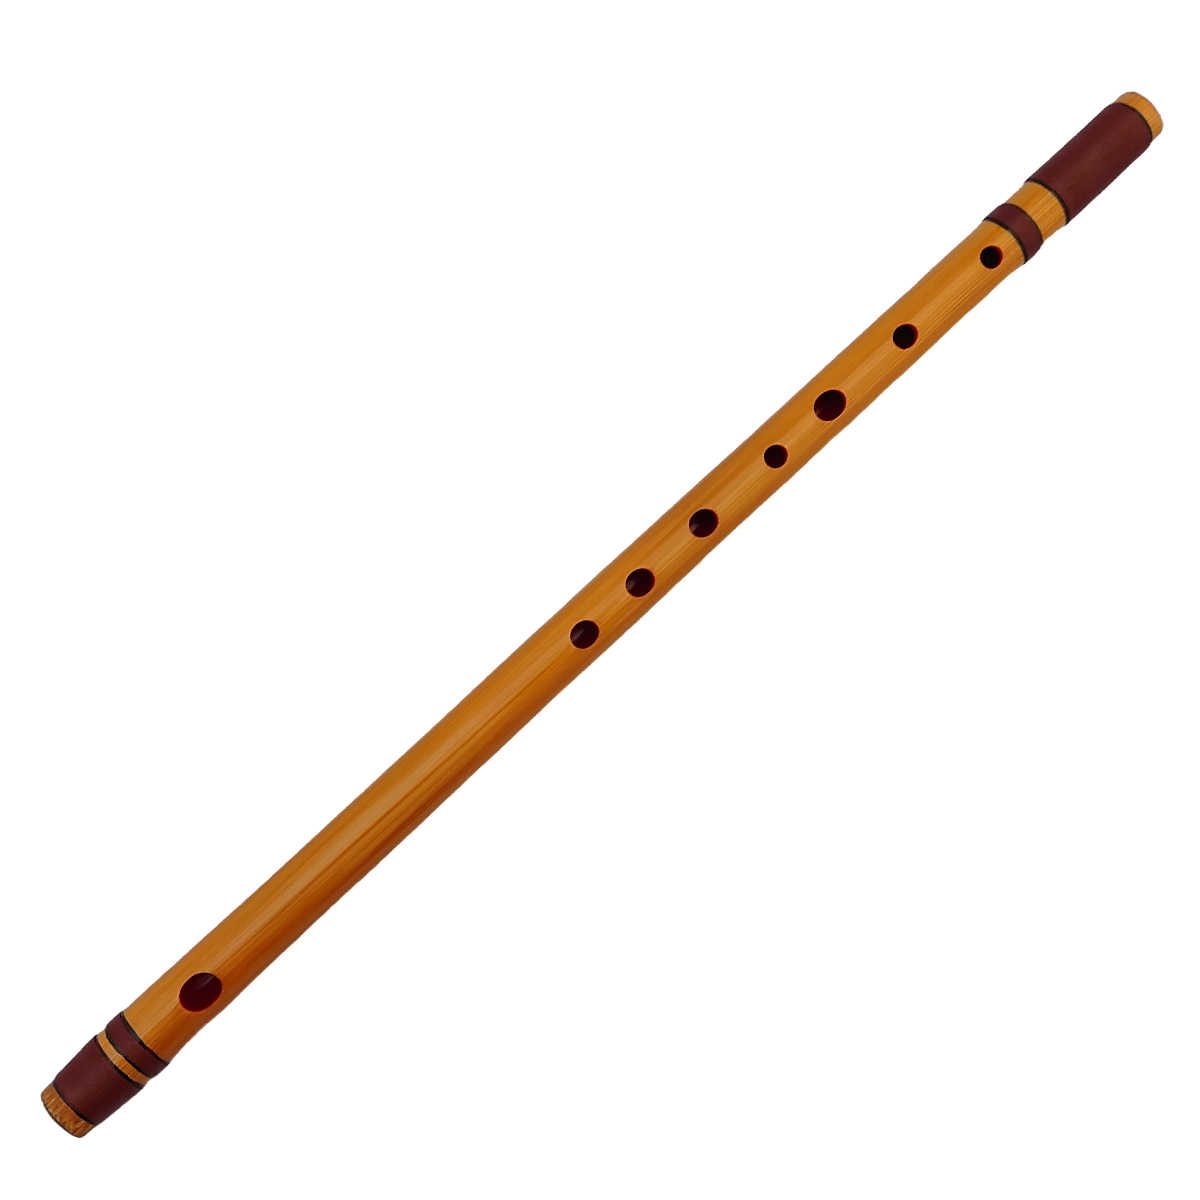 入門者にお勧めの竹製の明鏡篠笛です 明鏡 篠笛 自然の篠竹から制作しています。 現代音楽にも合わせやすい西洋音階のドレミ調です。 現品限りですので完売の際はご了承くださいませ。